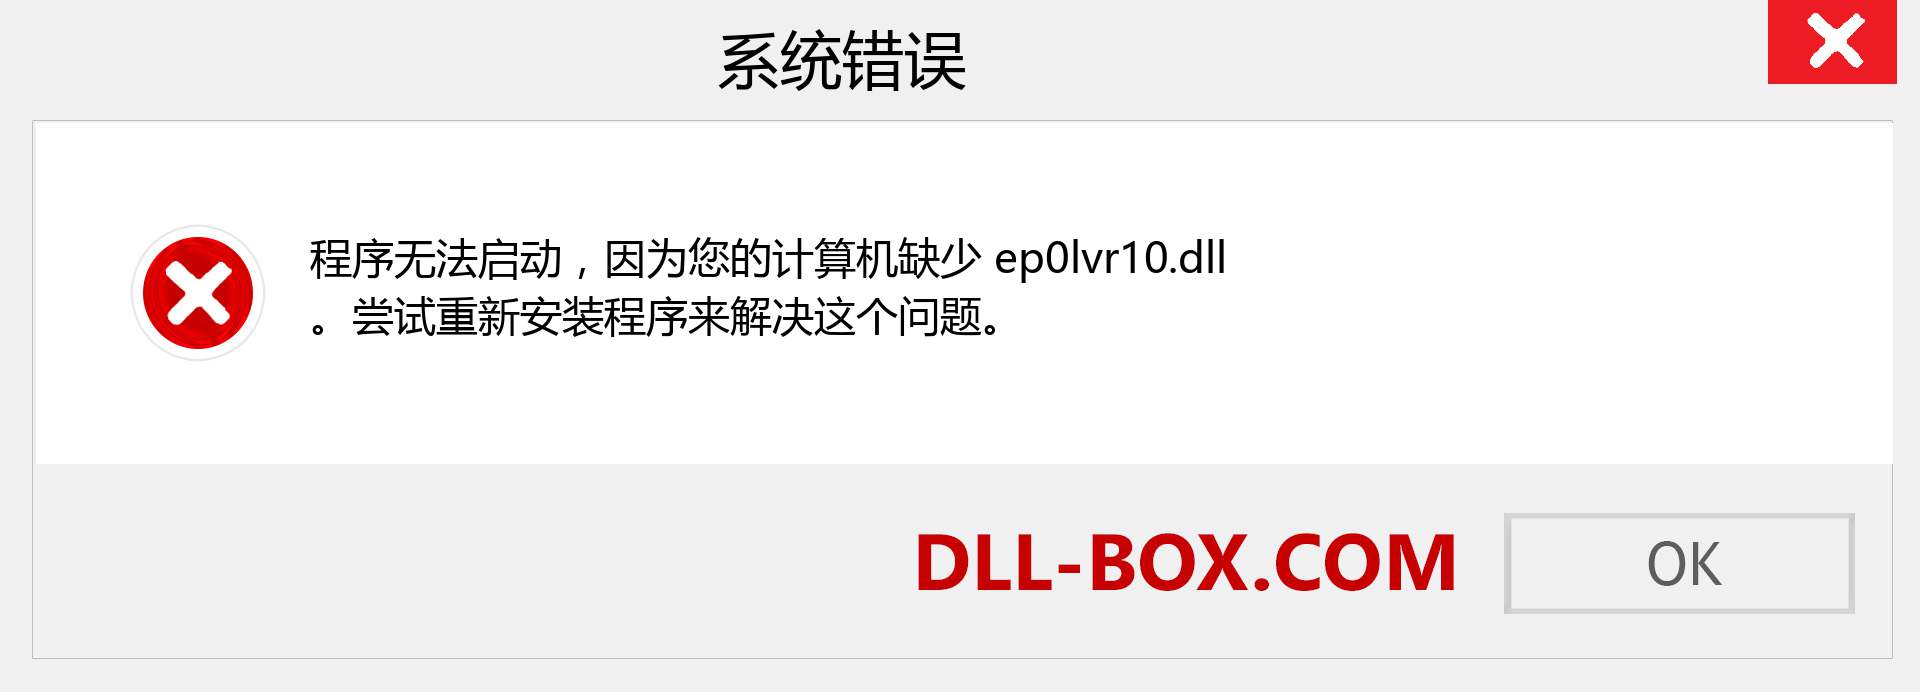 ep0lvr10.dll 文件丢失？。 适用于 Windows 7、8、10 的下载 - 修复 Windows、照片、图像上的 ep0lvr10 dll 丢失错误